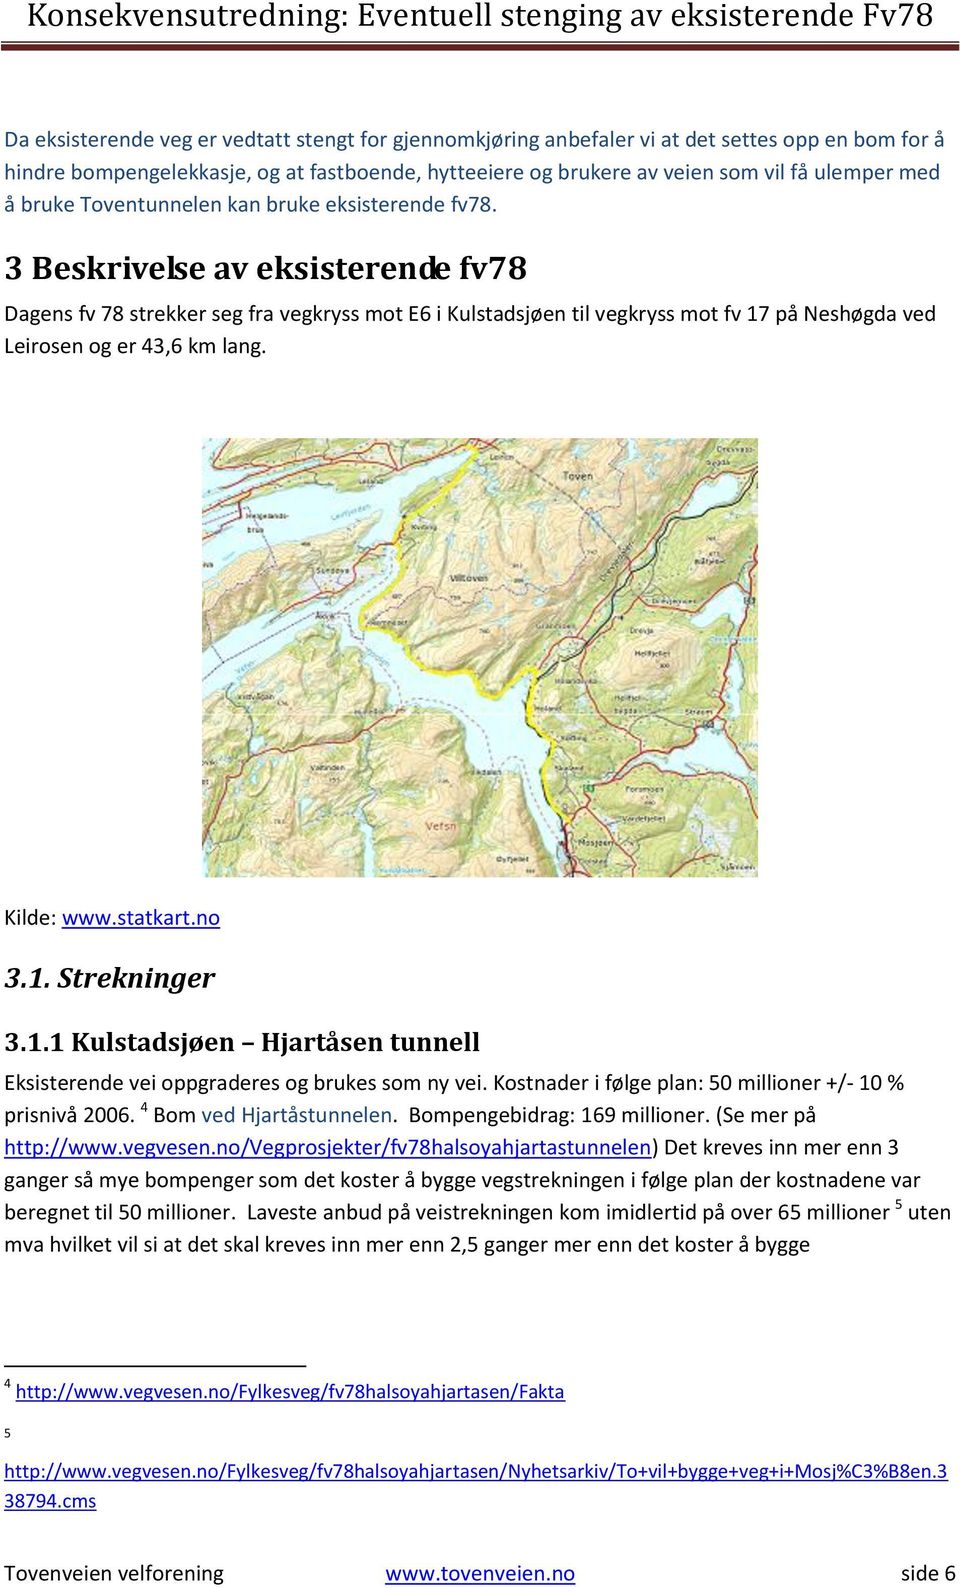 3 Beskrivelse av eksisterende fv78 Dagens fv 78 strekker seg fra vegkryss mot E6 i Kulstadsjøen til vegkryss mot fv 17 på Neshøgda ved Leirosen og er 43,6 km lang. Kilde: www.statkart.no 3.1. Strekninger 3.